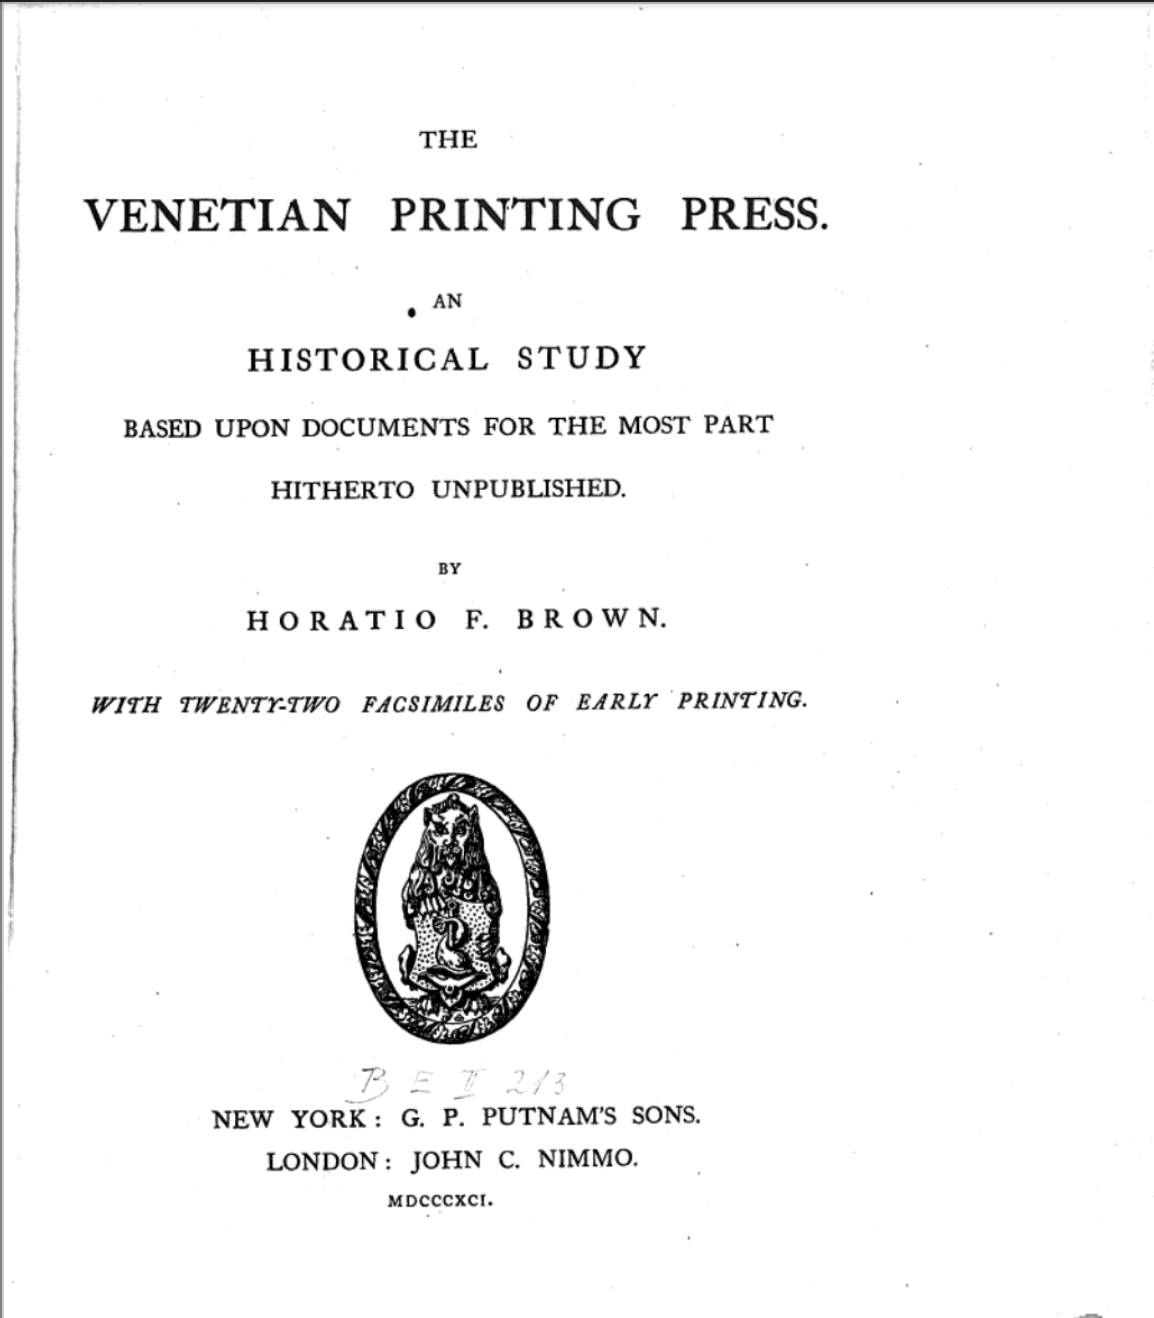 The Venetian Printing Press, 1891